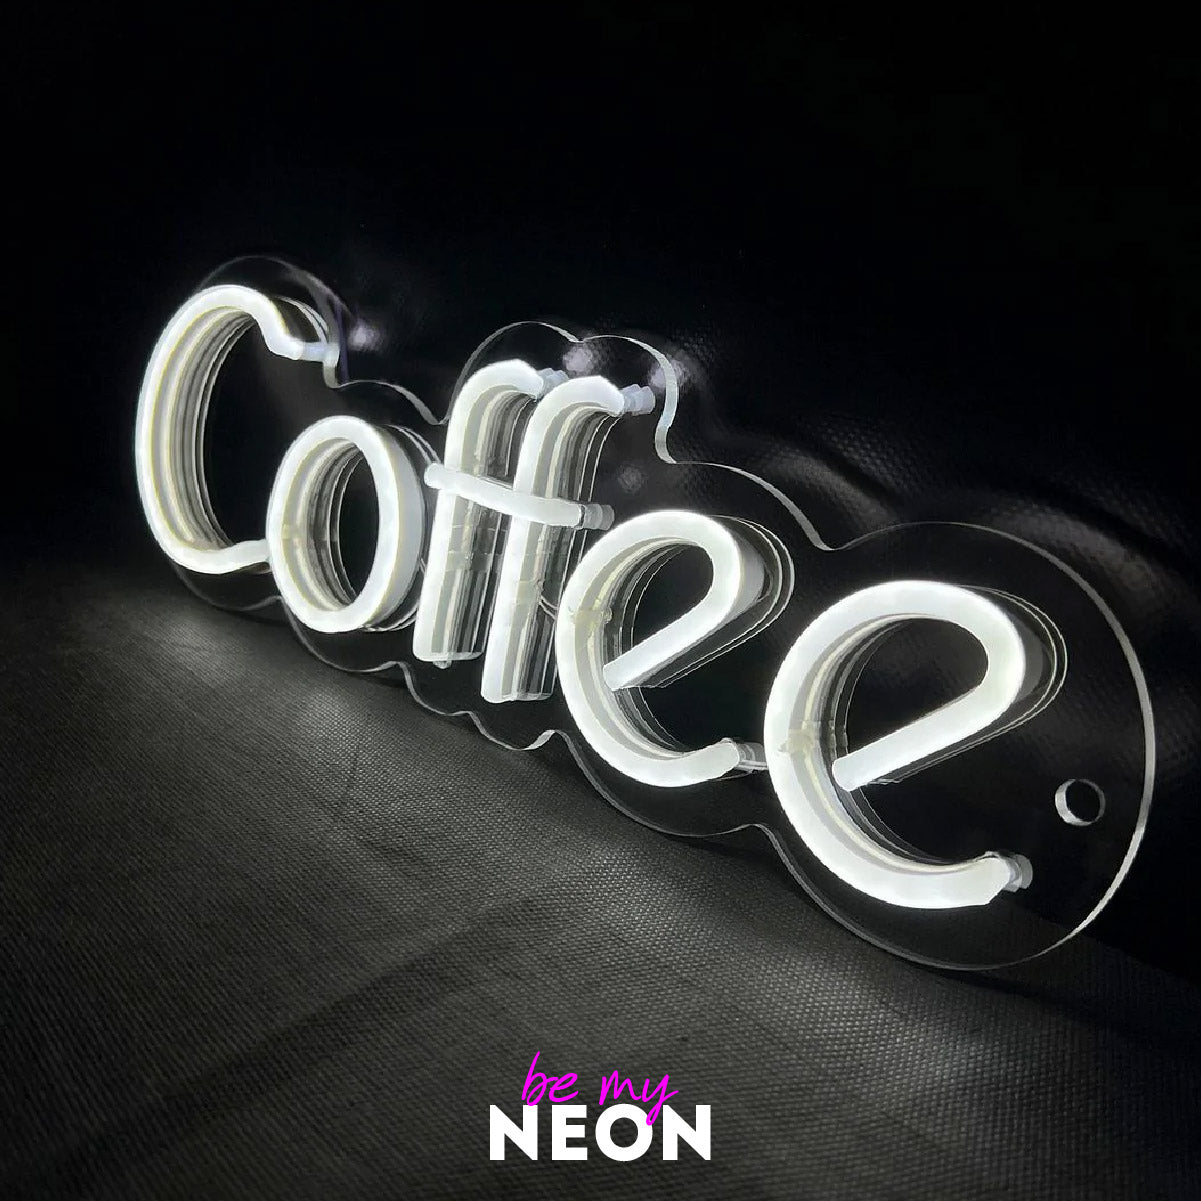 "Coffee" LED Neonschild